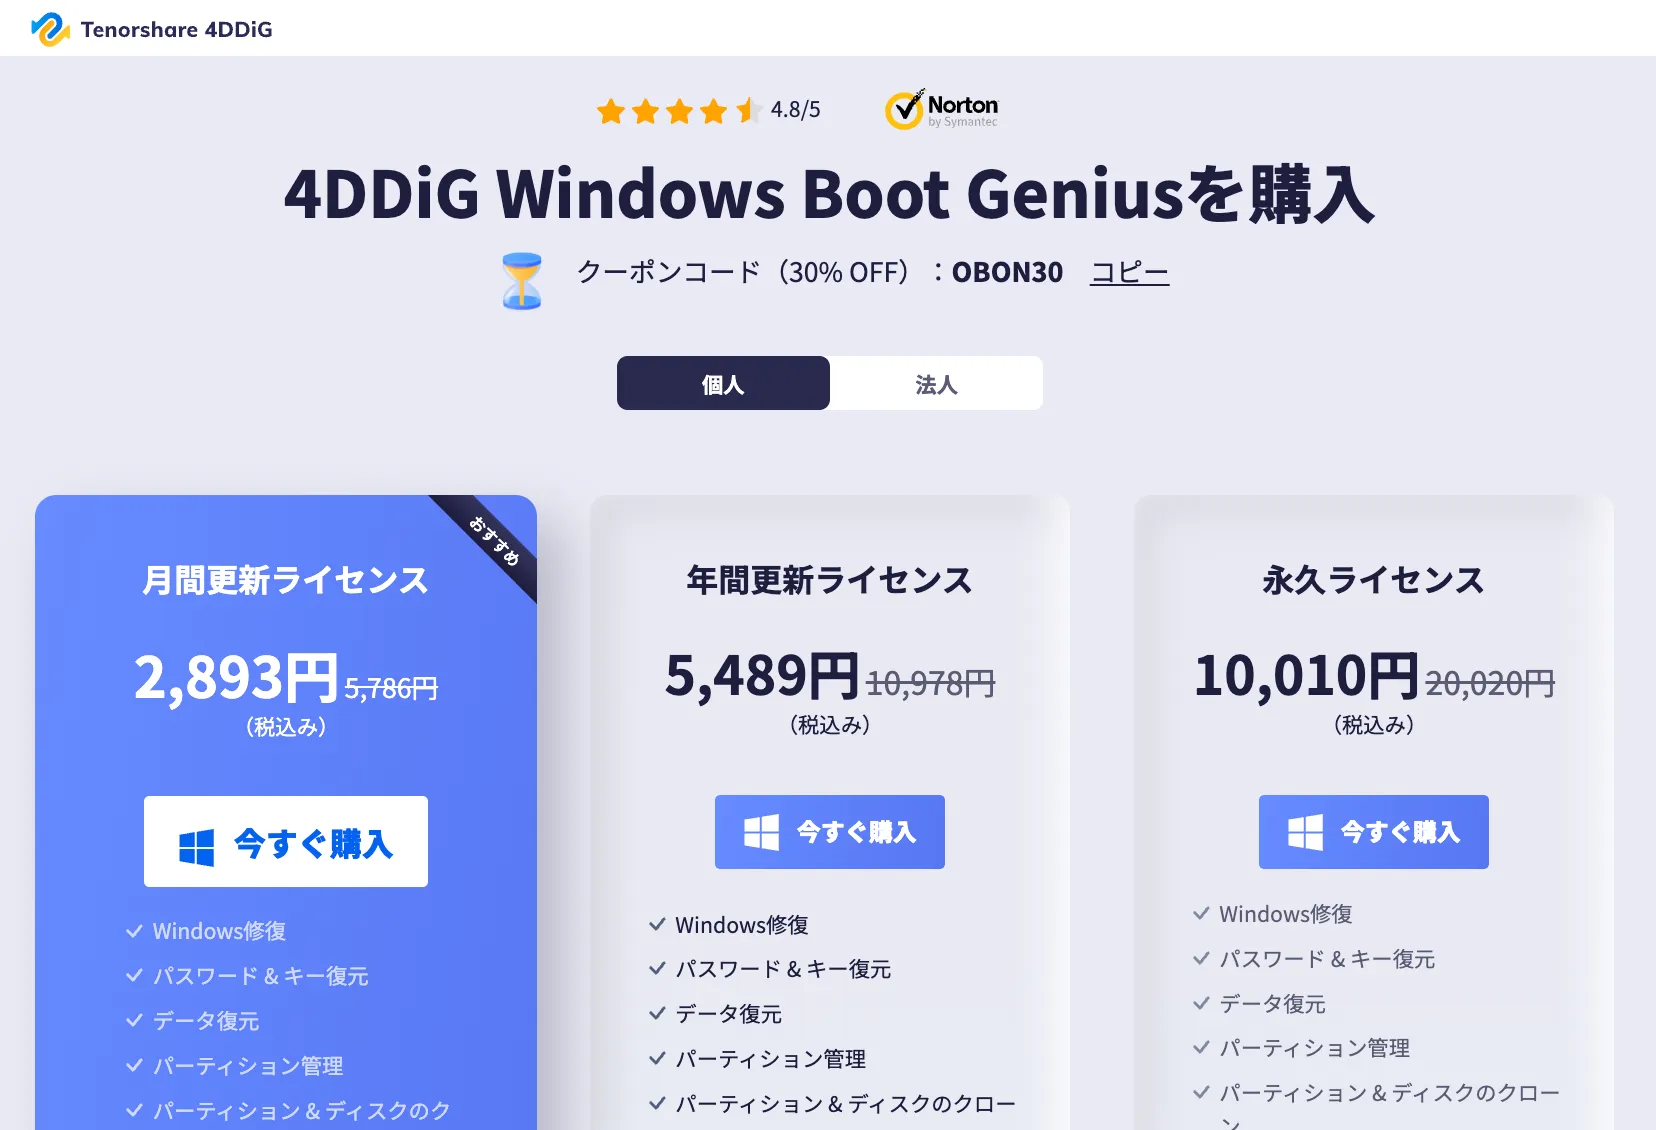 4DDiG Windows Boot Geniusの料金